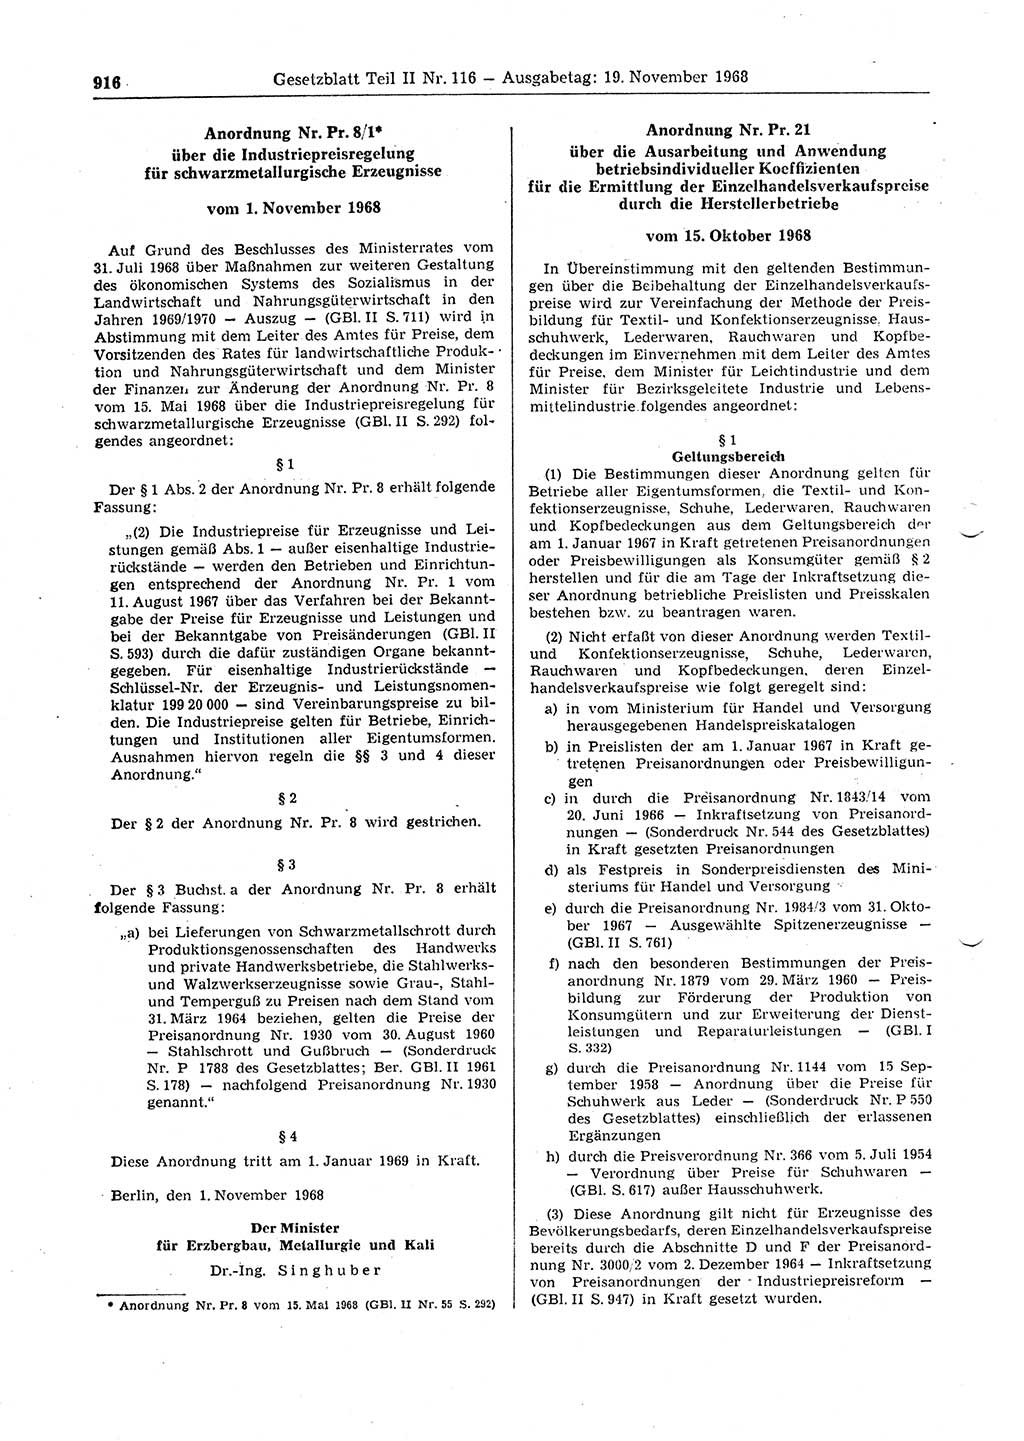 Gesetzblatt (GBl.) der Deutschen Demokratischen Republik (DDR) Teil ⅠⅠ 1968, Seite 916 (GBl. DDR ⅠⅠ 1968, S. 916)